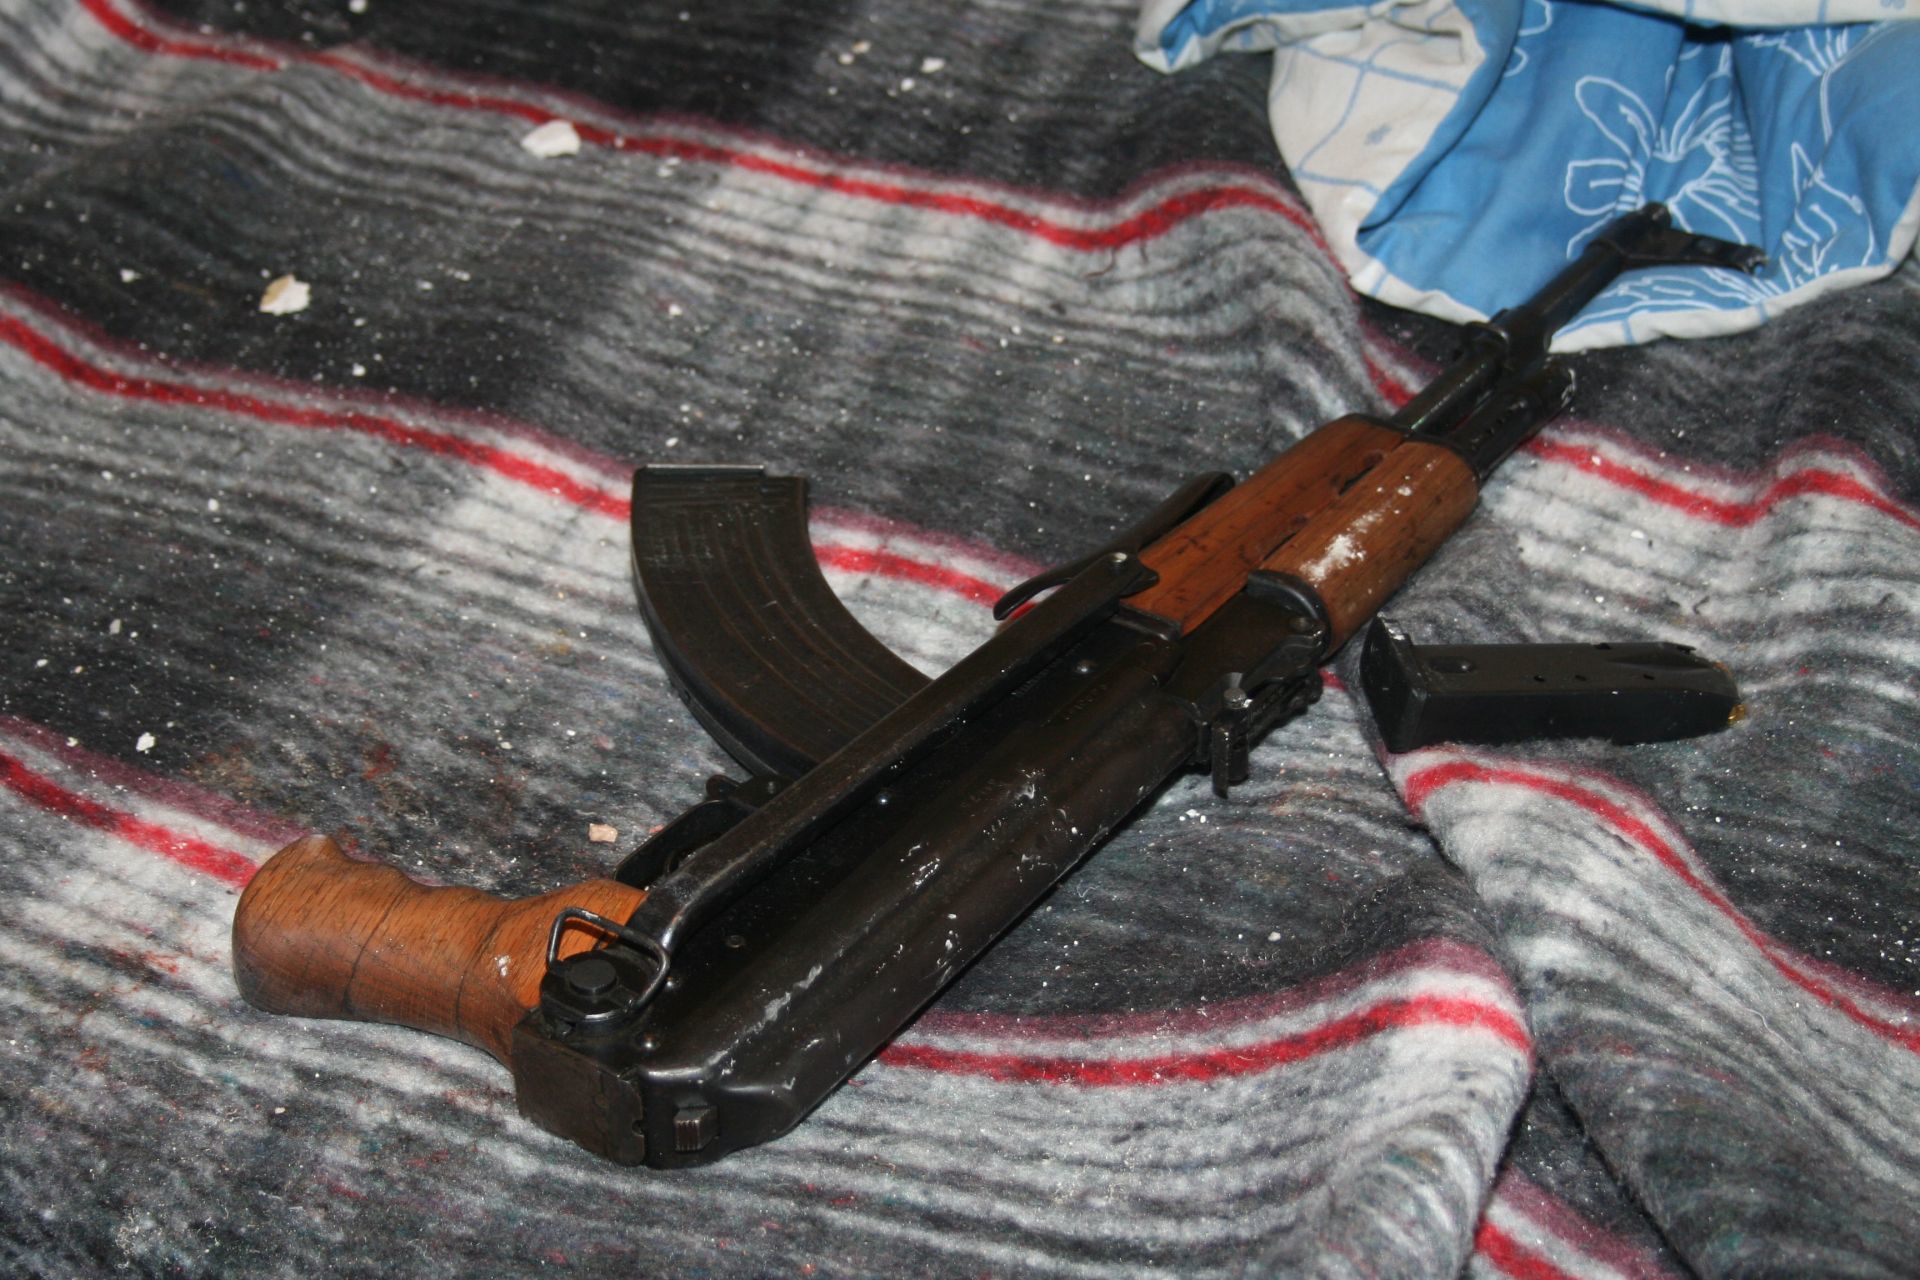 Los rifles AK-47 son utilizados por los grupos criminales debido a la ligereza de sus balas. (CUARTOSCURO)